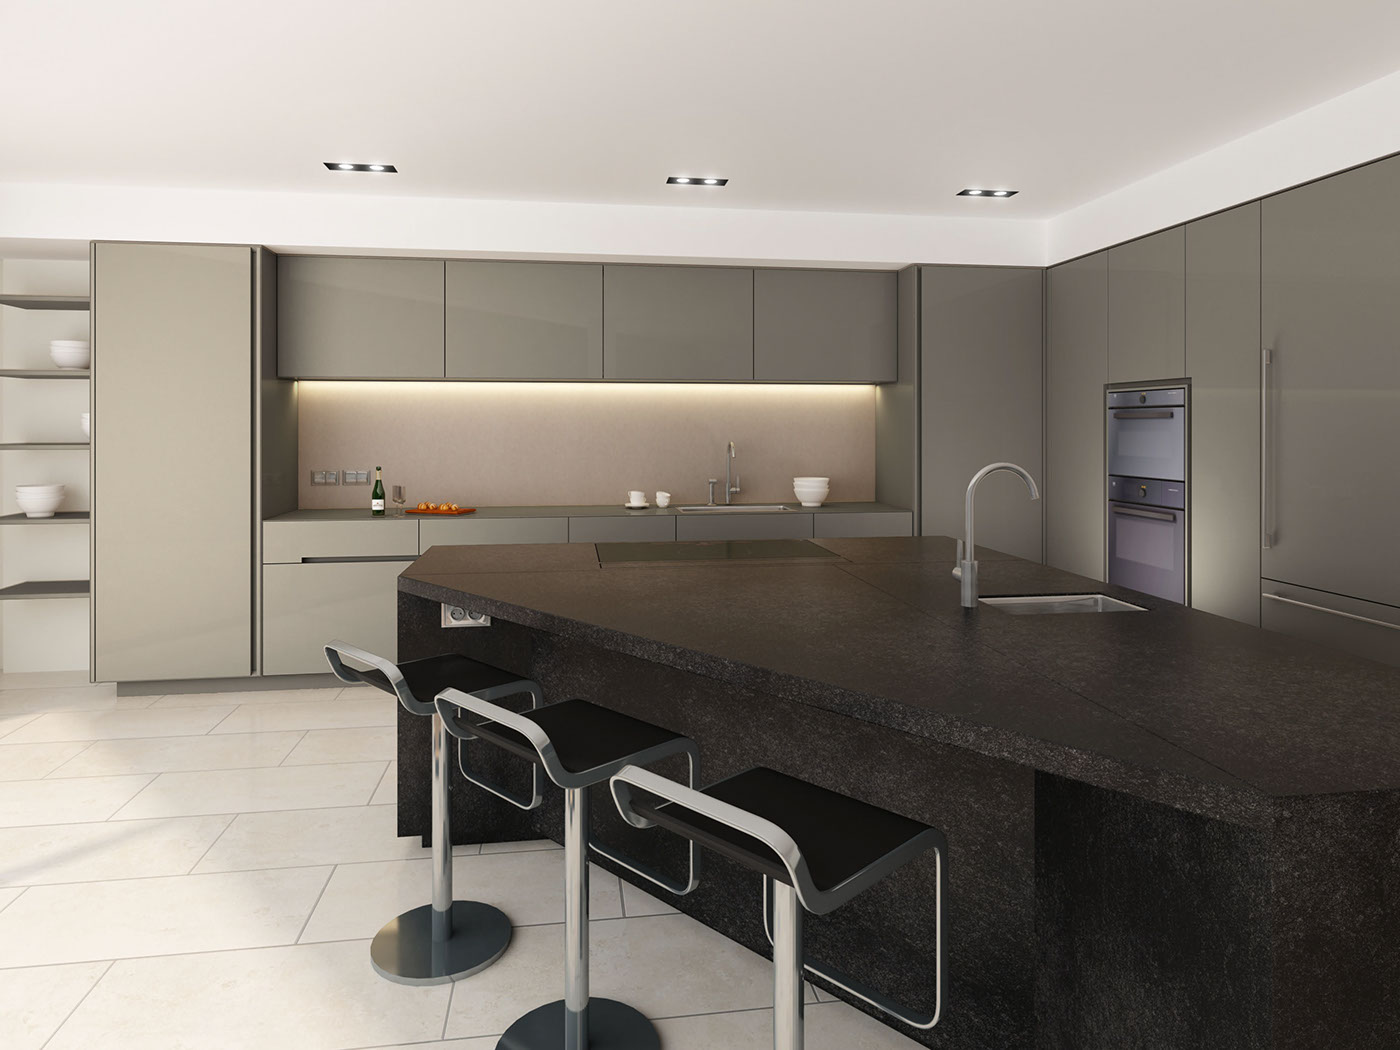 kitchen Render 3D Visualization interior design  kitchen design rendering CGI architecture 3D model VisEngine